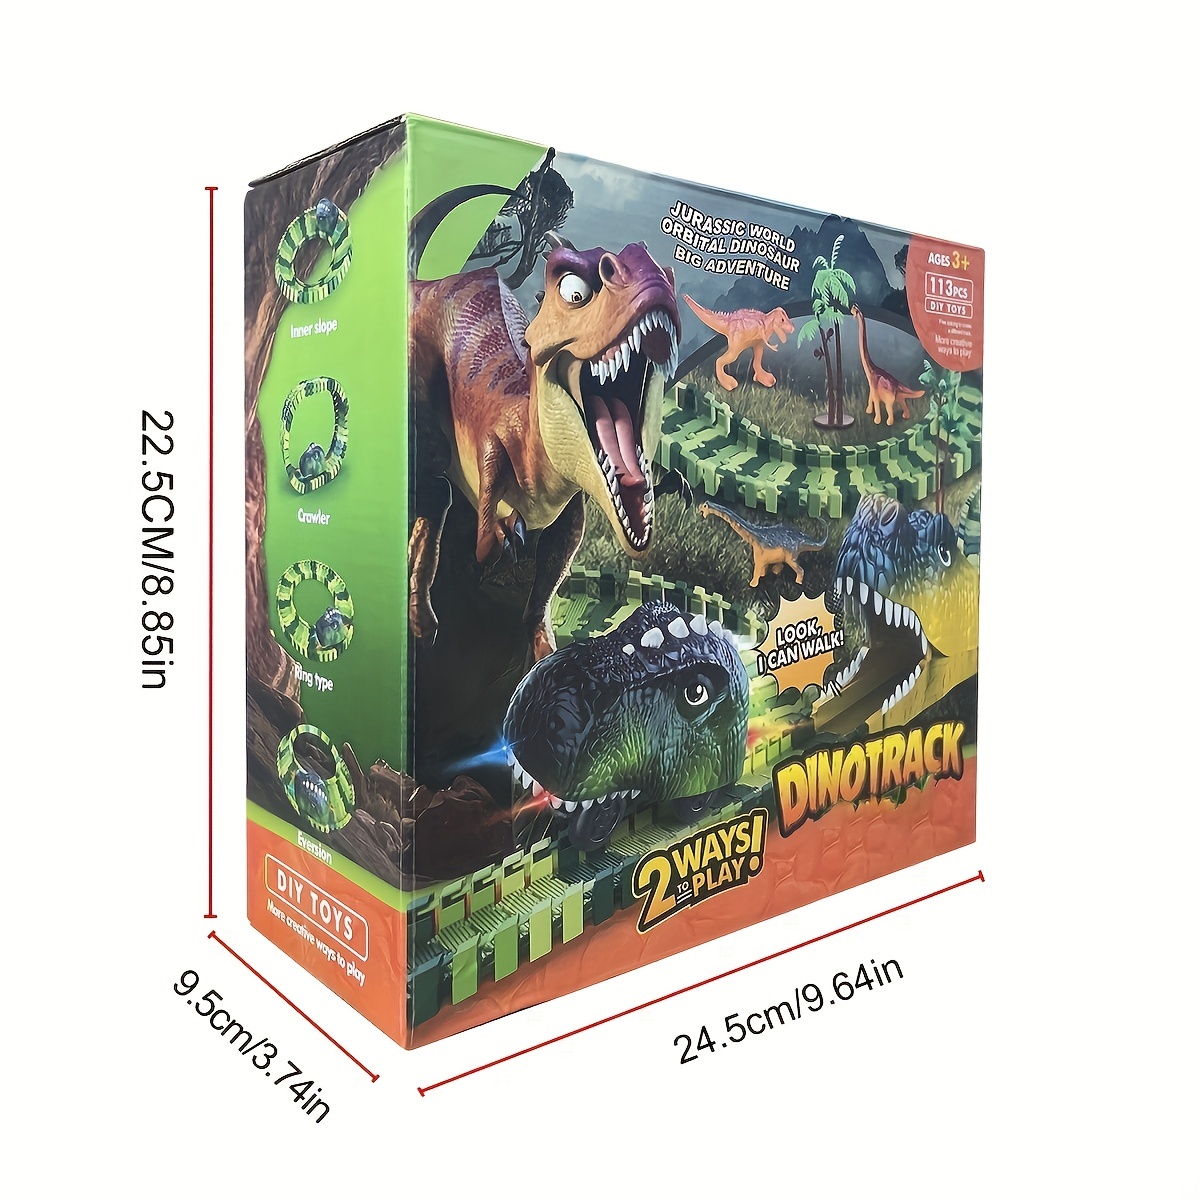 165 pièces dinosaure course ensemble Creat dinosaure jouets Tace route  assembler piste jouets électrique course voiture dinosaure modèle jouet  pour enfants 